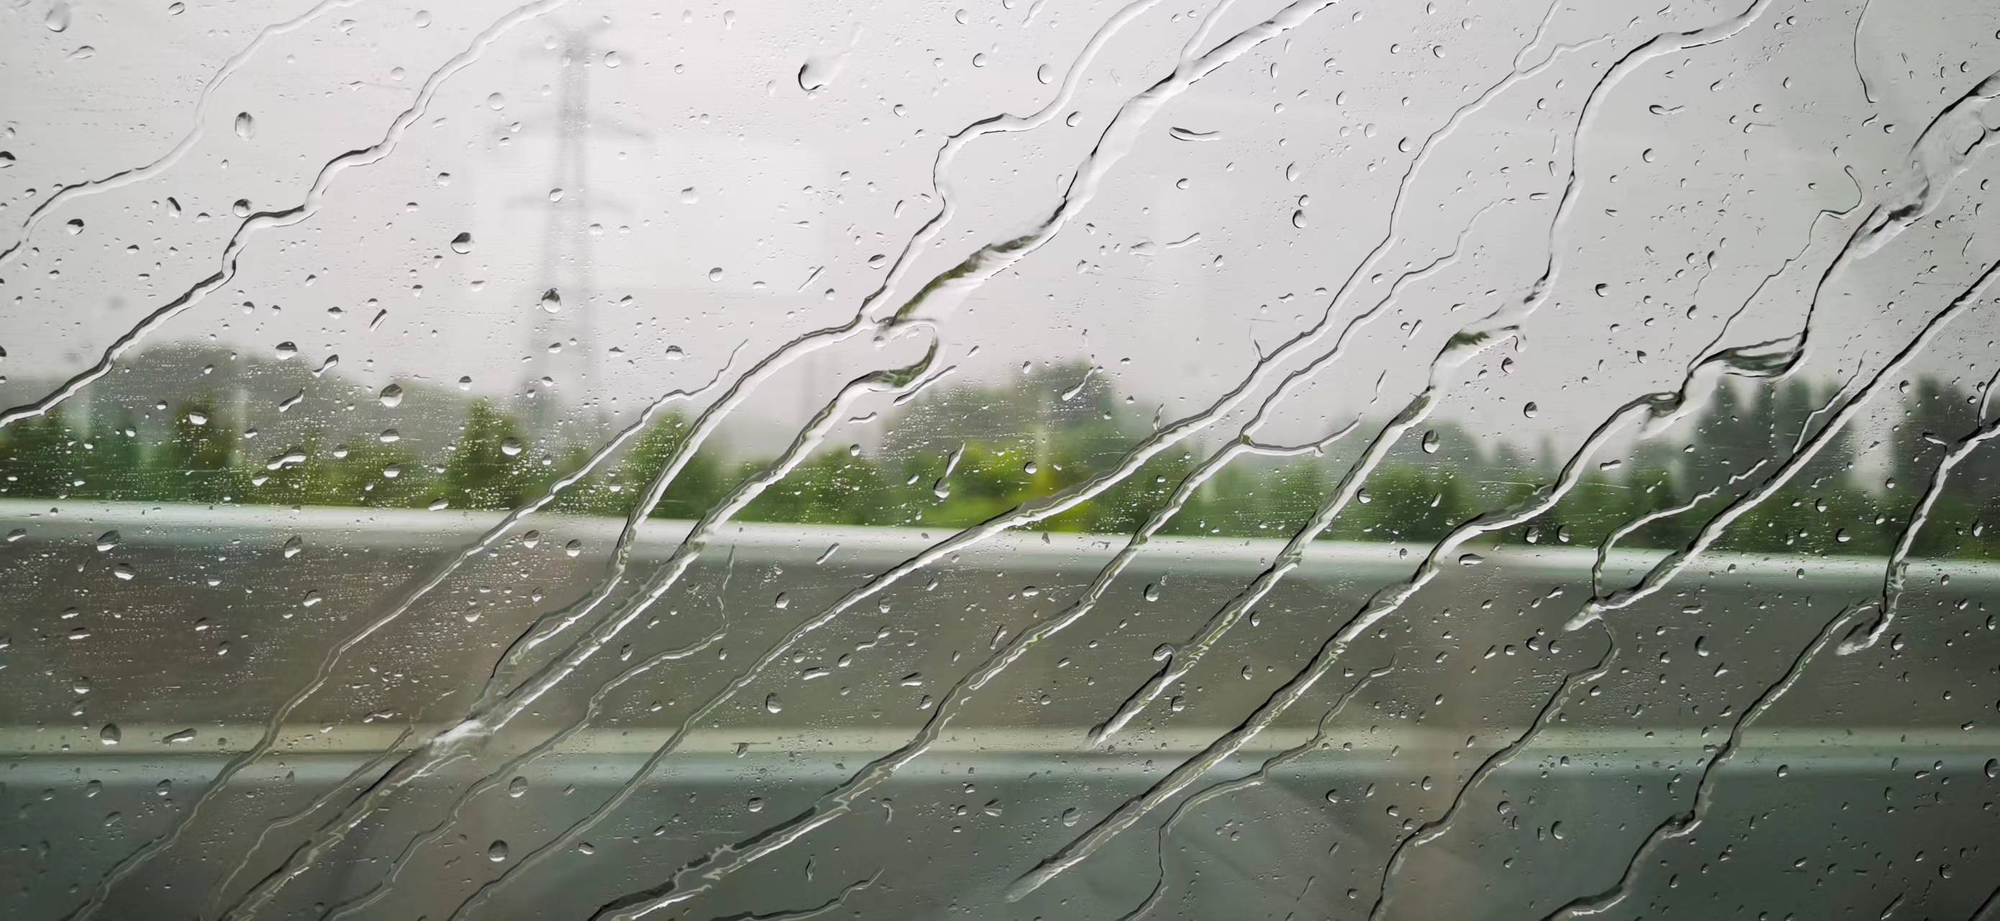 2022年7月10日 雨滢 投稿 拍摄于徐州